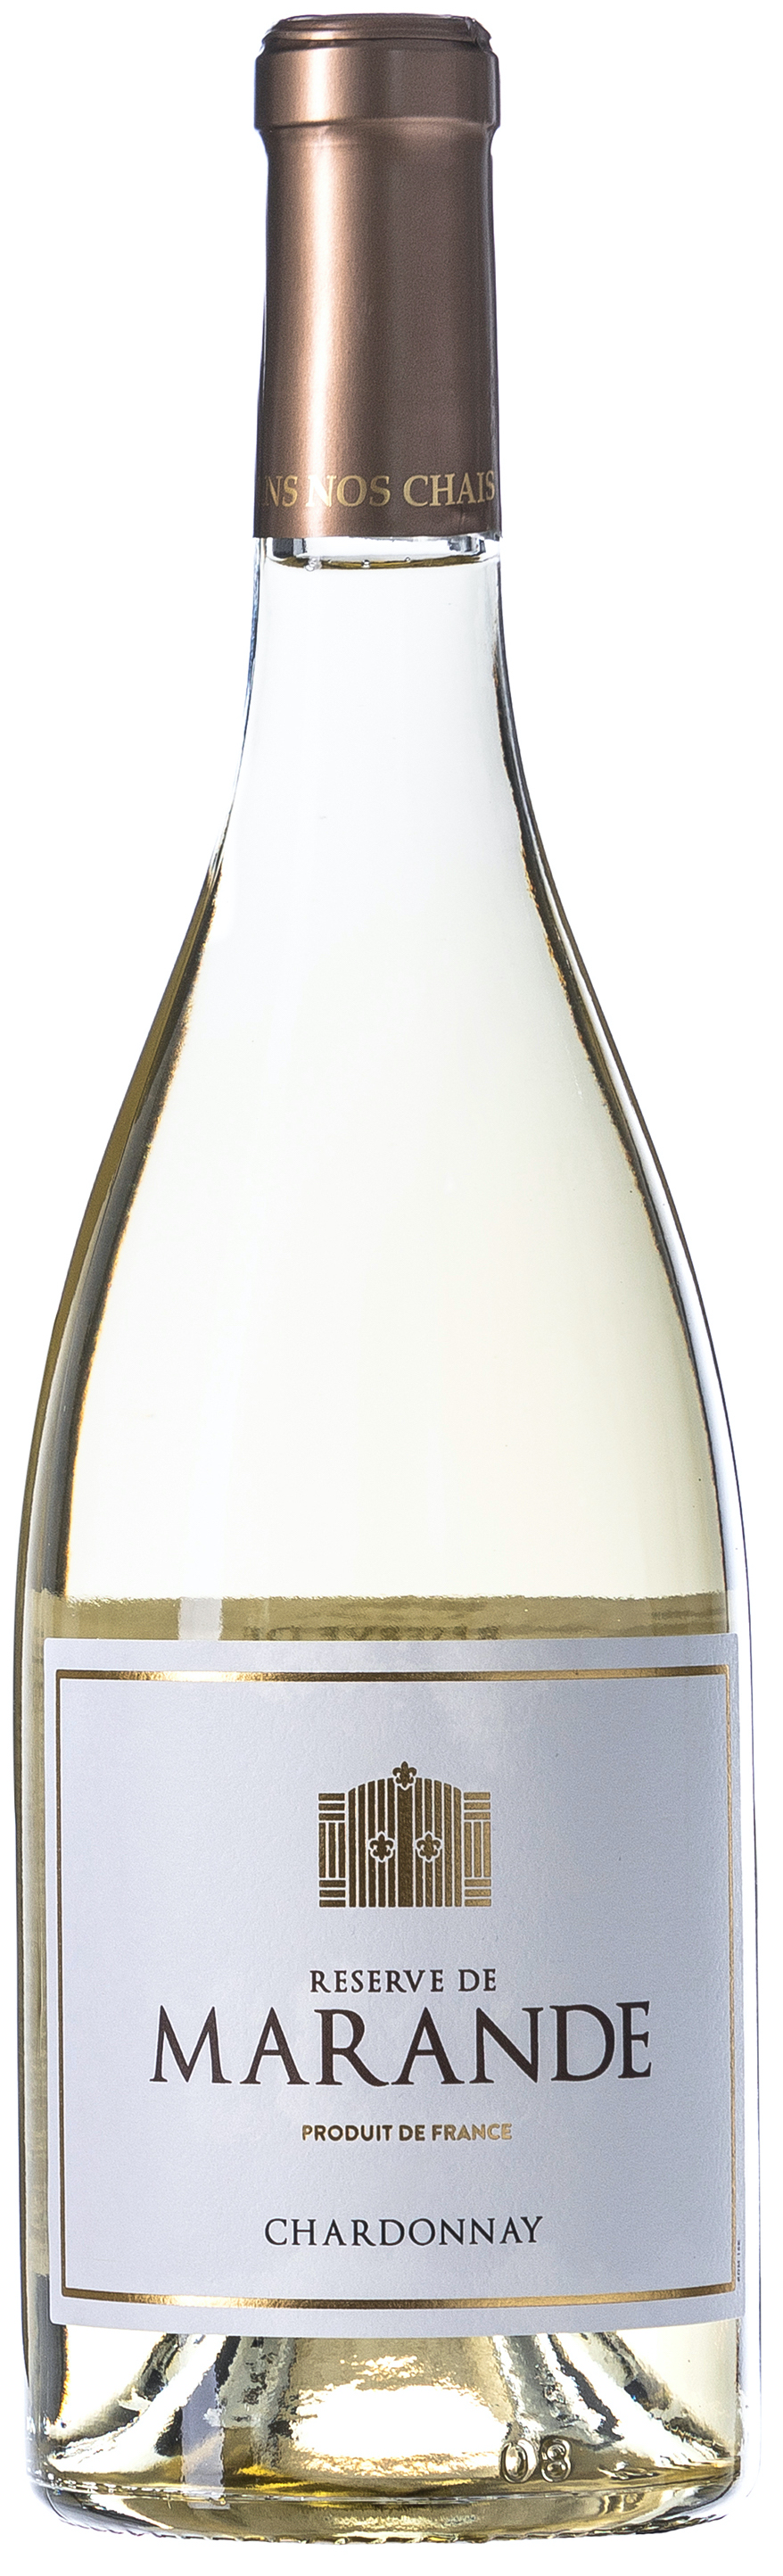 Reserve de Marande Chardonnay 13% vol. 0,75L